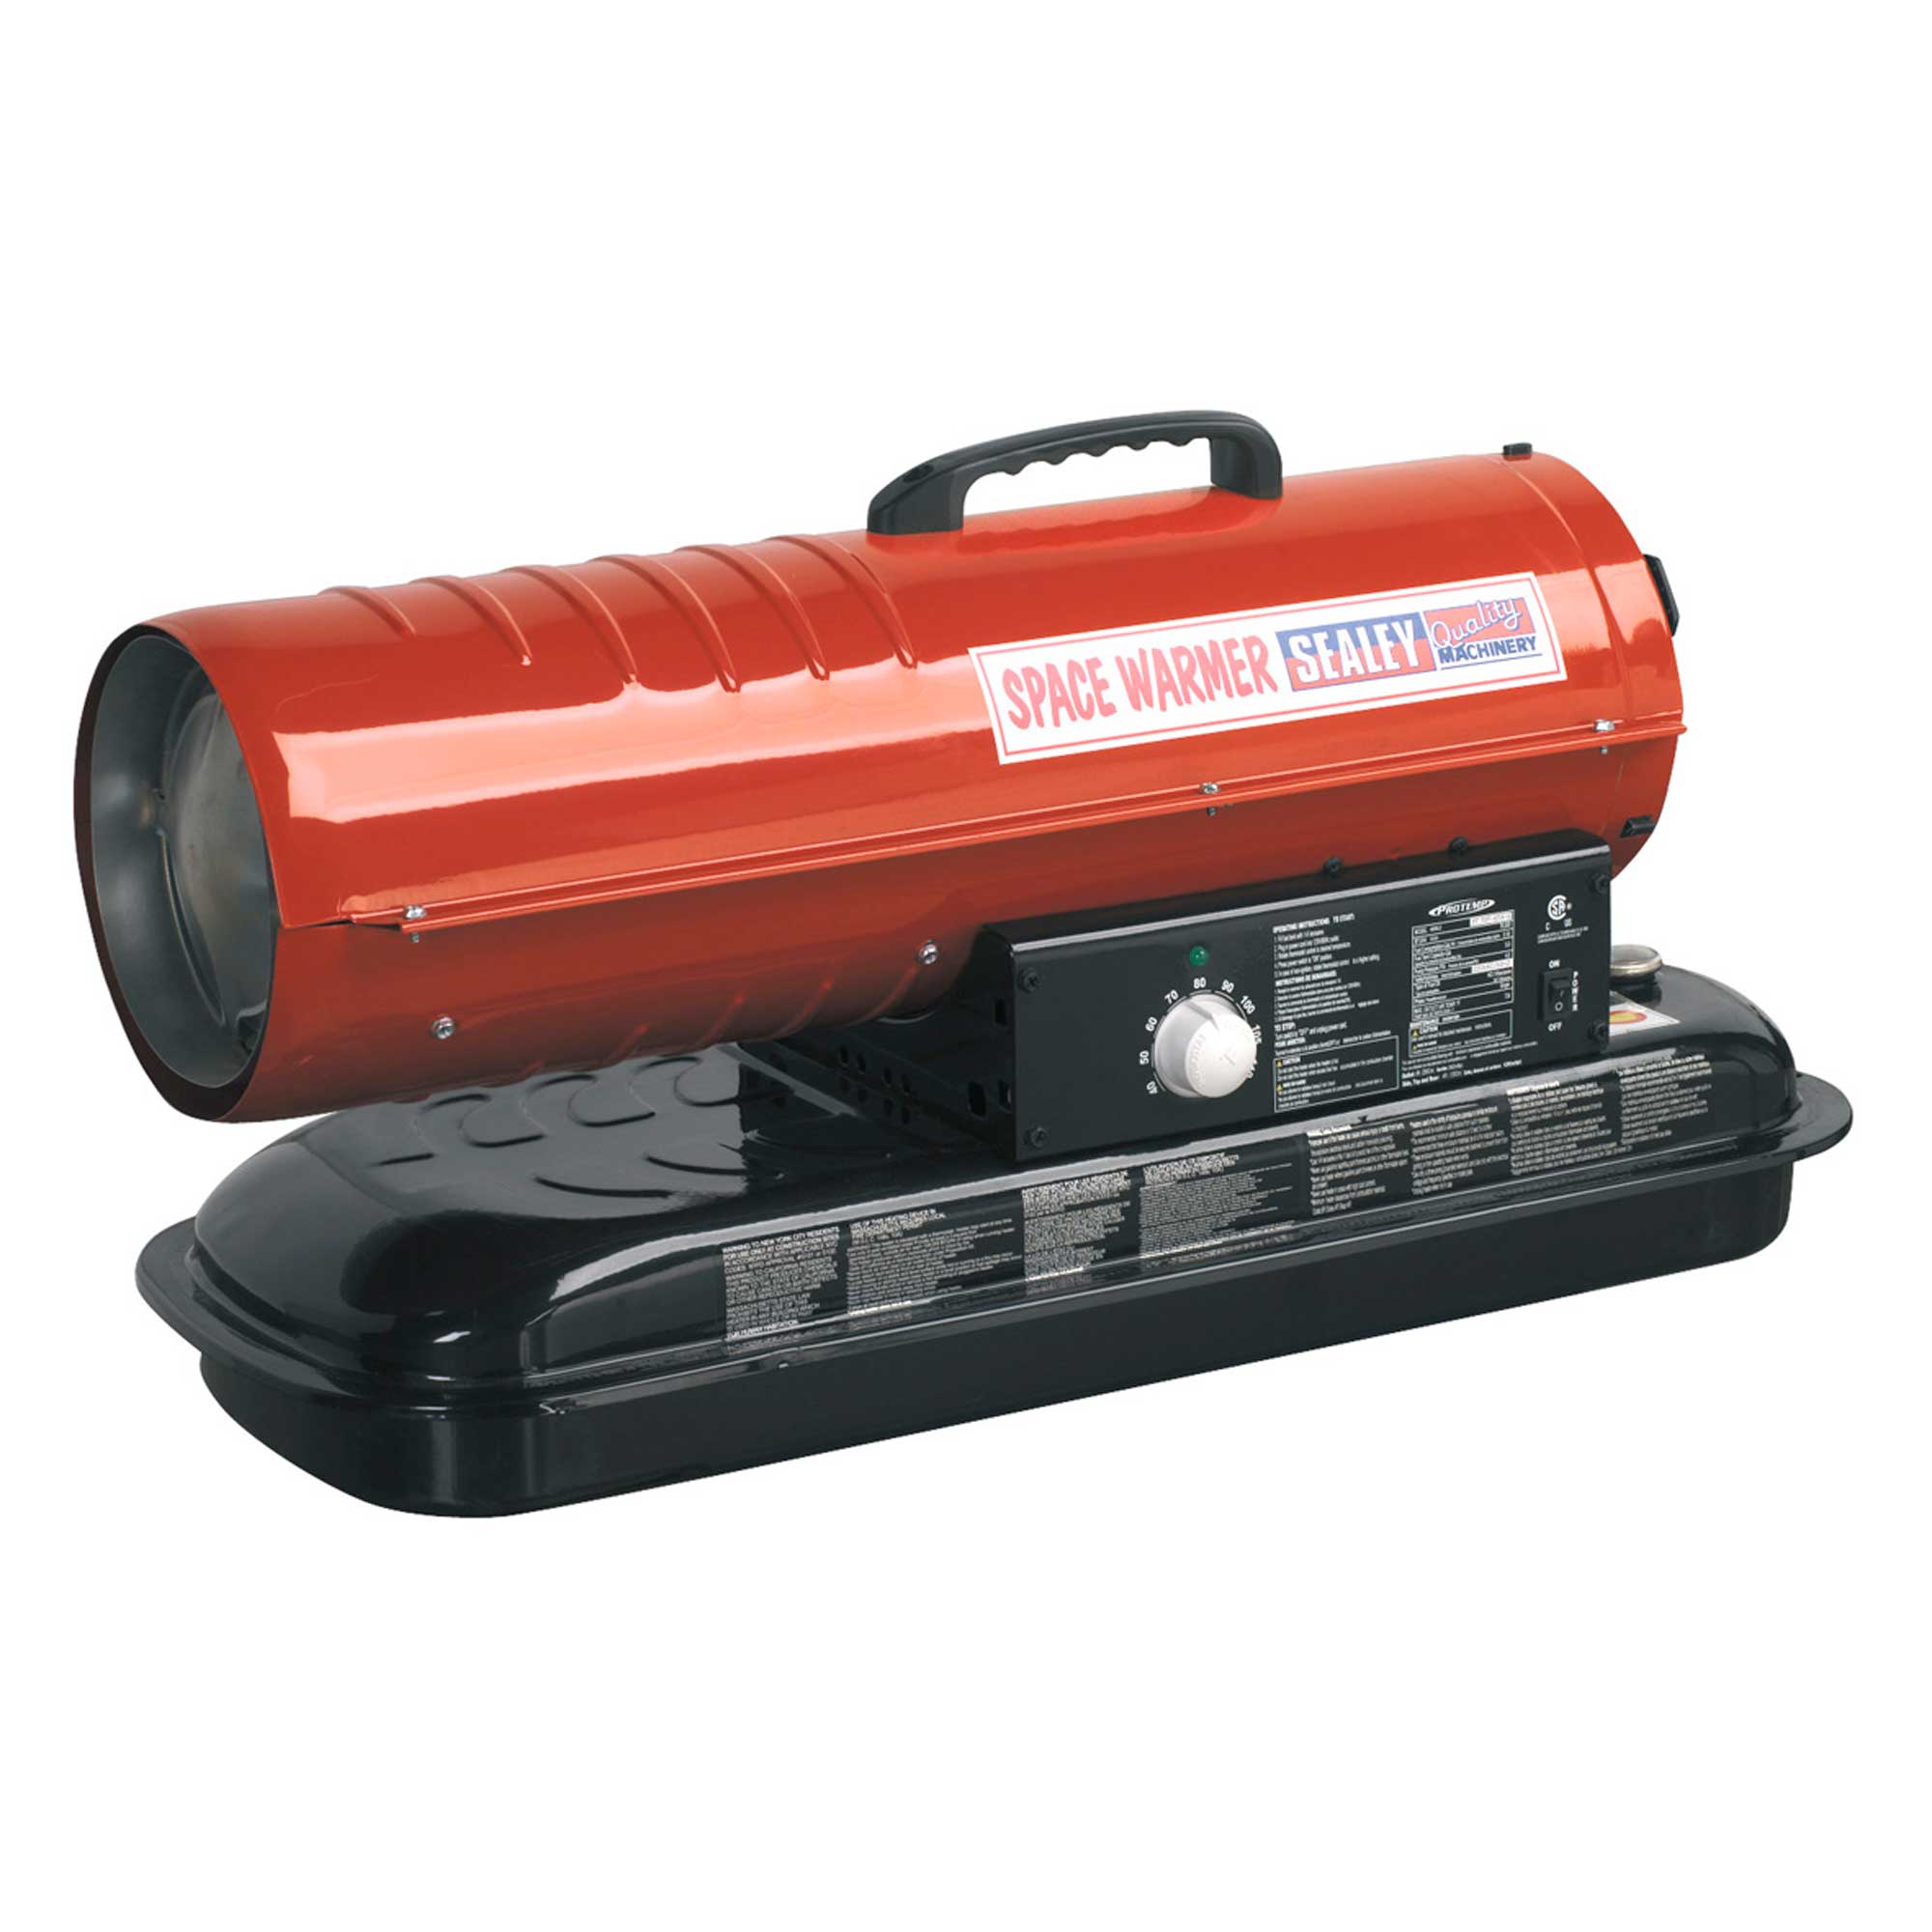 Sealey Space Warmer Paraffin/Kerosene/Diesel Heater/Blower 70,000Btu/hr